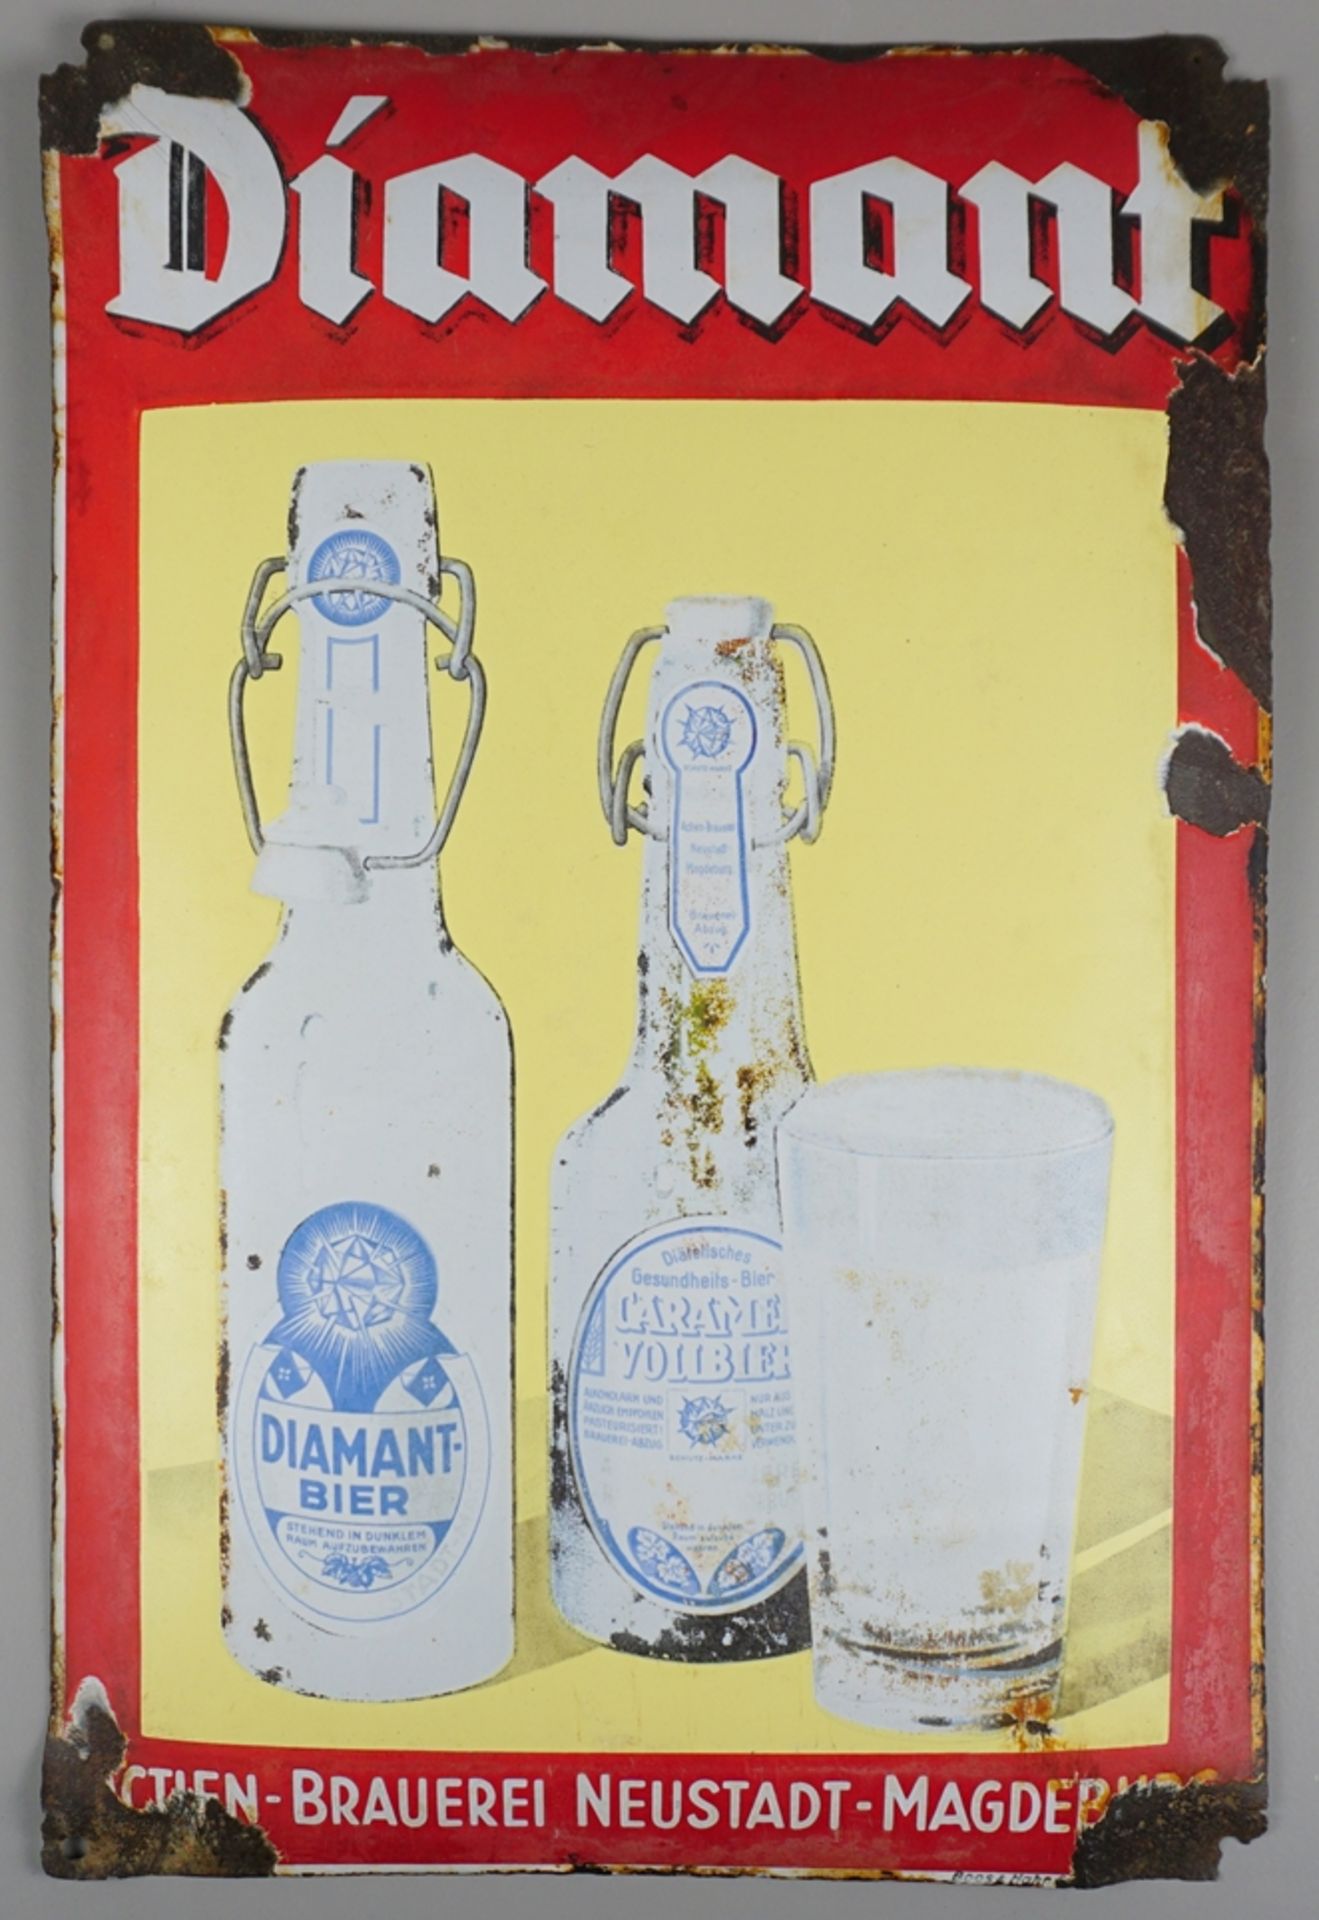 Emailleschild "Diamant Actien-Brauerei Neustadt-Magdeburg", 1940er Jahre